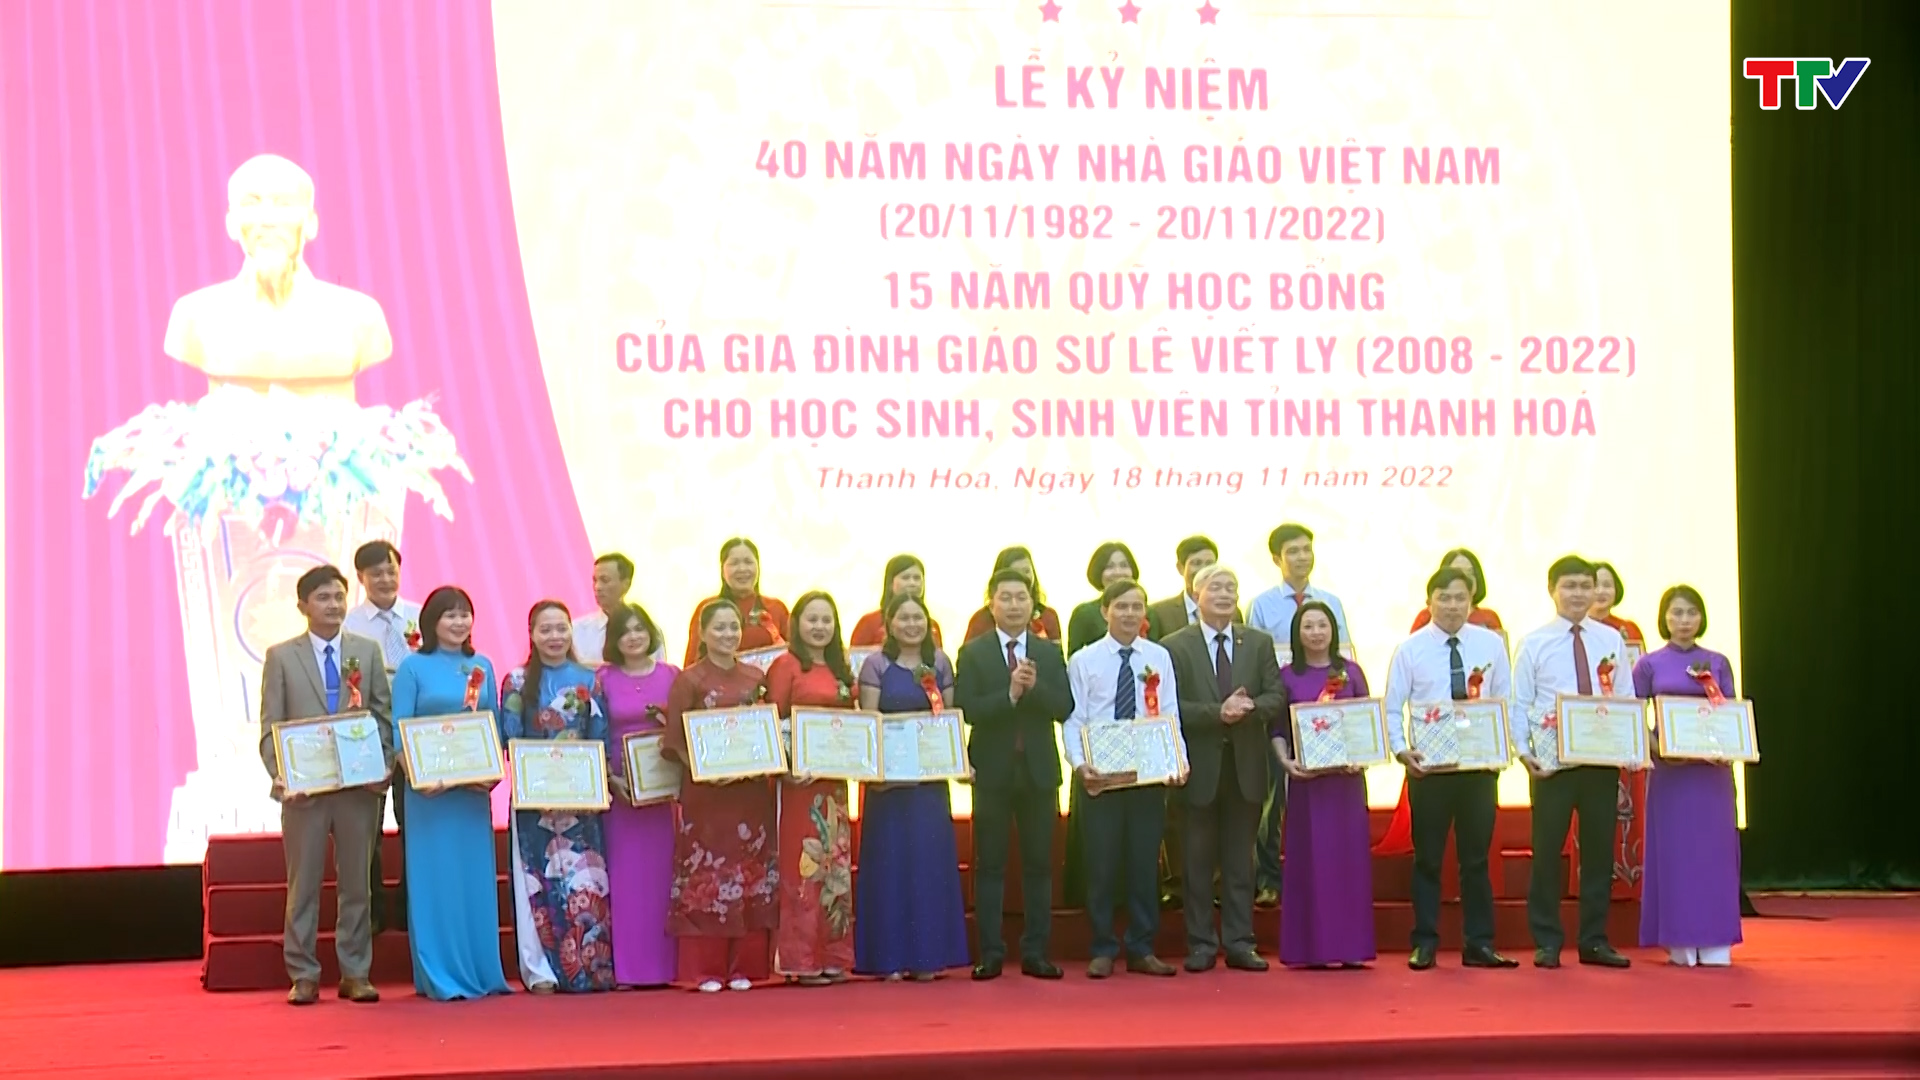 Hội khuyến học tỉnh Thanh Hoá kỷ niệm 40 năm ngày nhà giáo Việt Nam, 15 năm quỹ học bổng của gia đình giáo sư Lê Viết Ly - Ảnh 3.